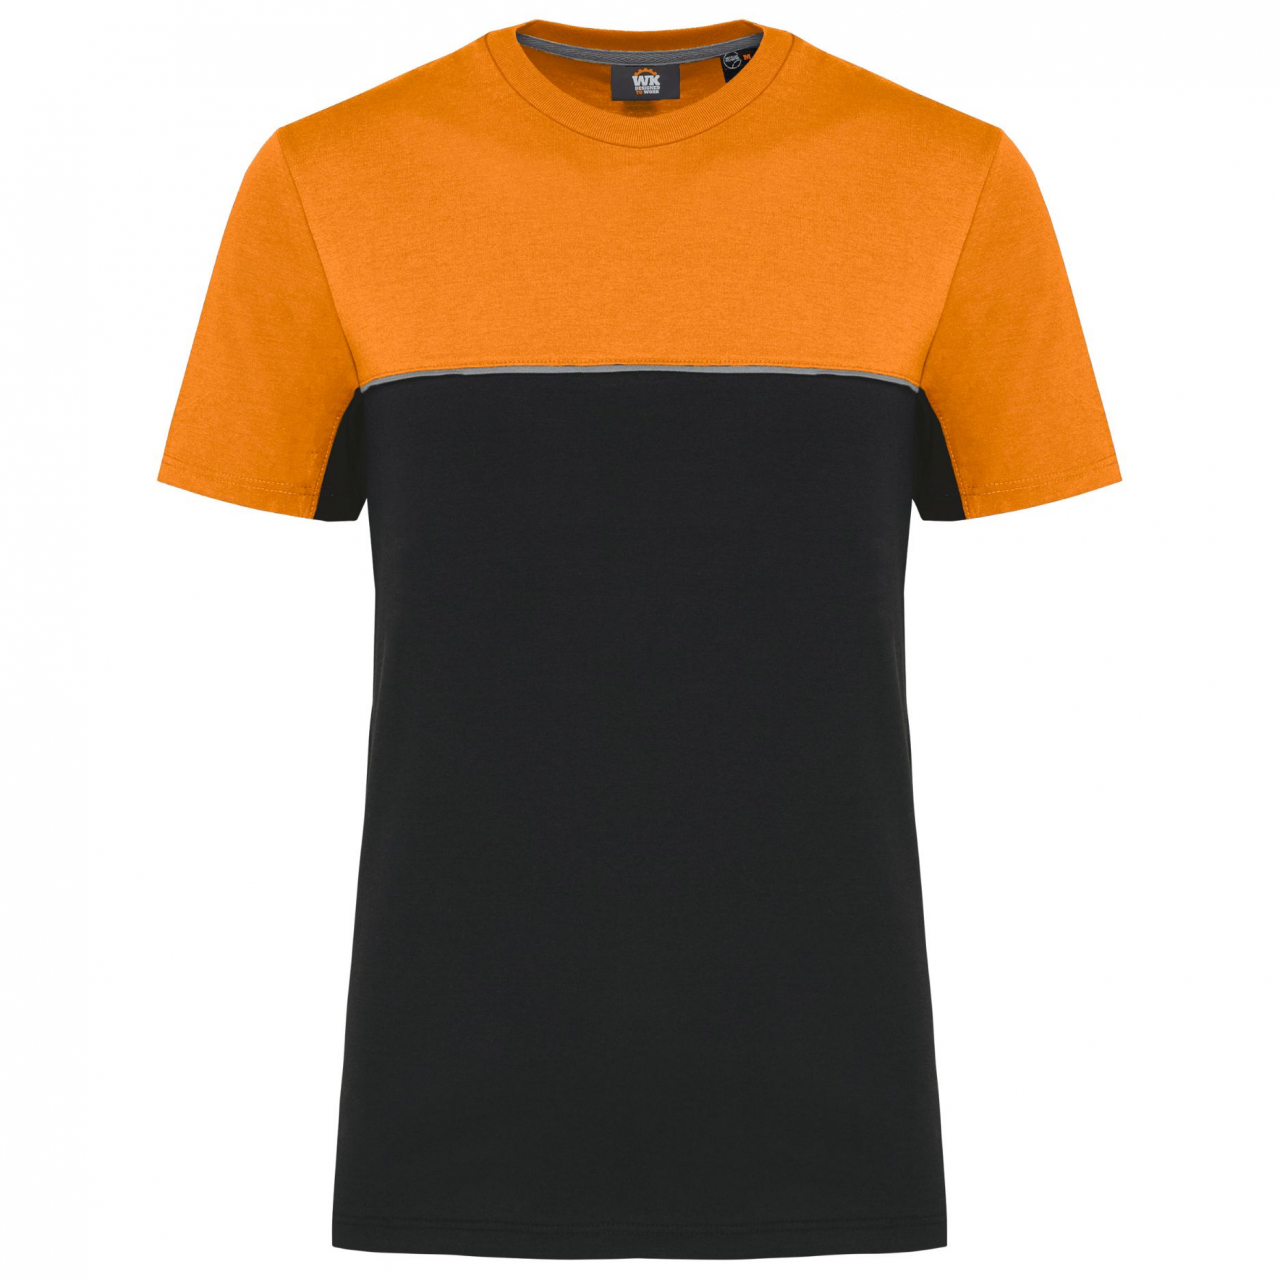 Pracovní triko dvoubarevné WK - černé-oranžové, XS